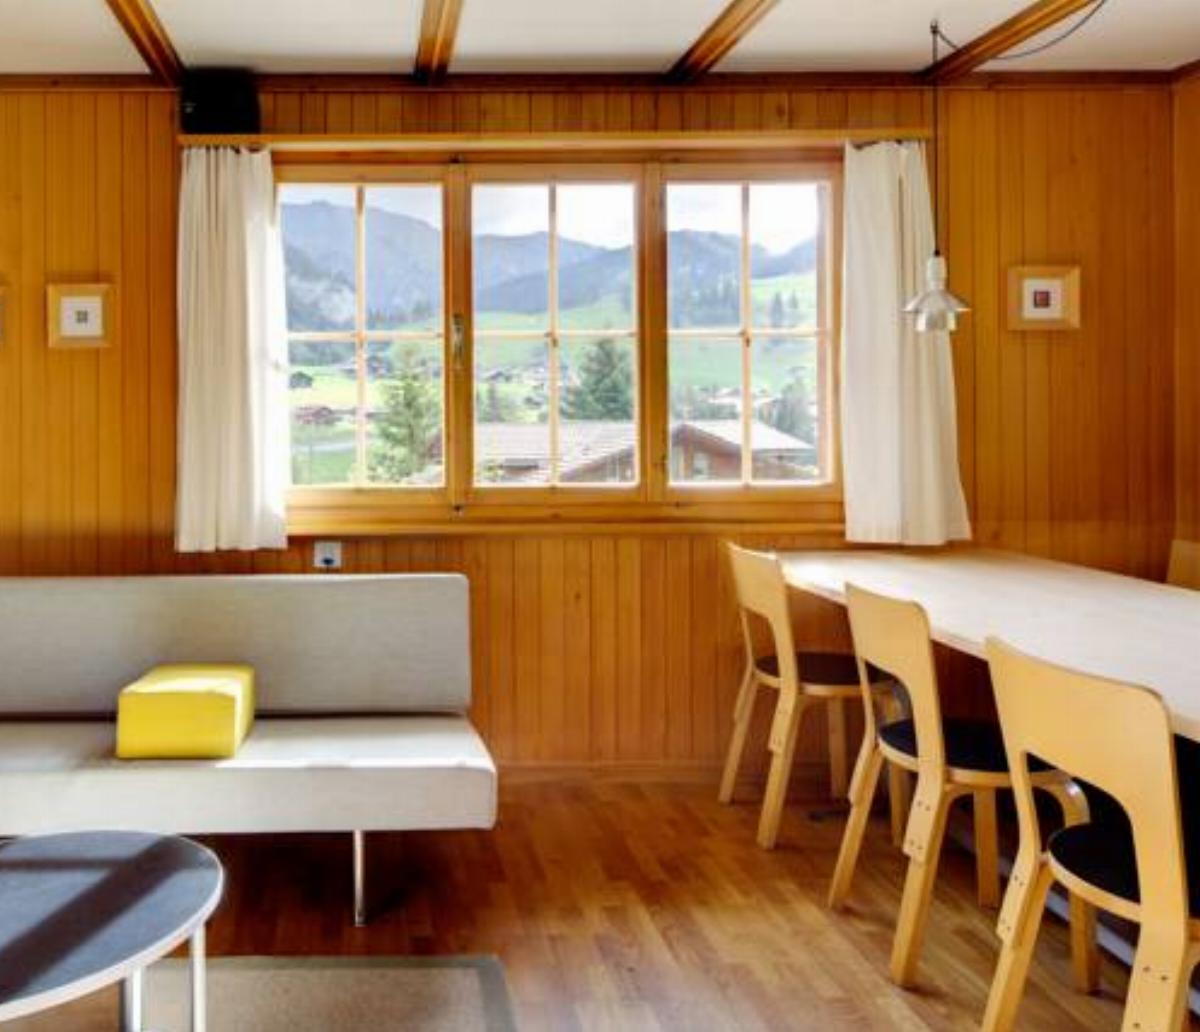 Chalet Dayuma Hotel Adelboden Switzerland